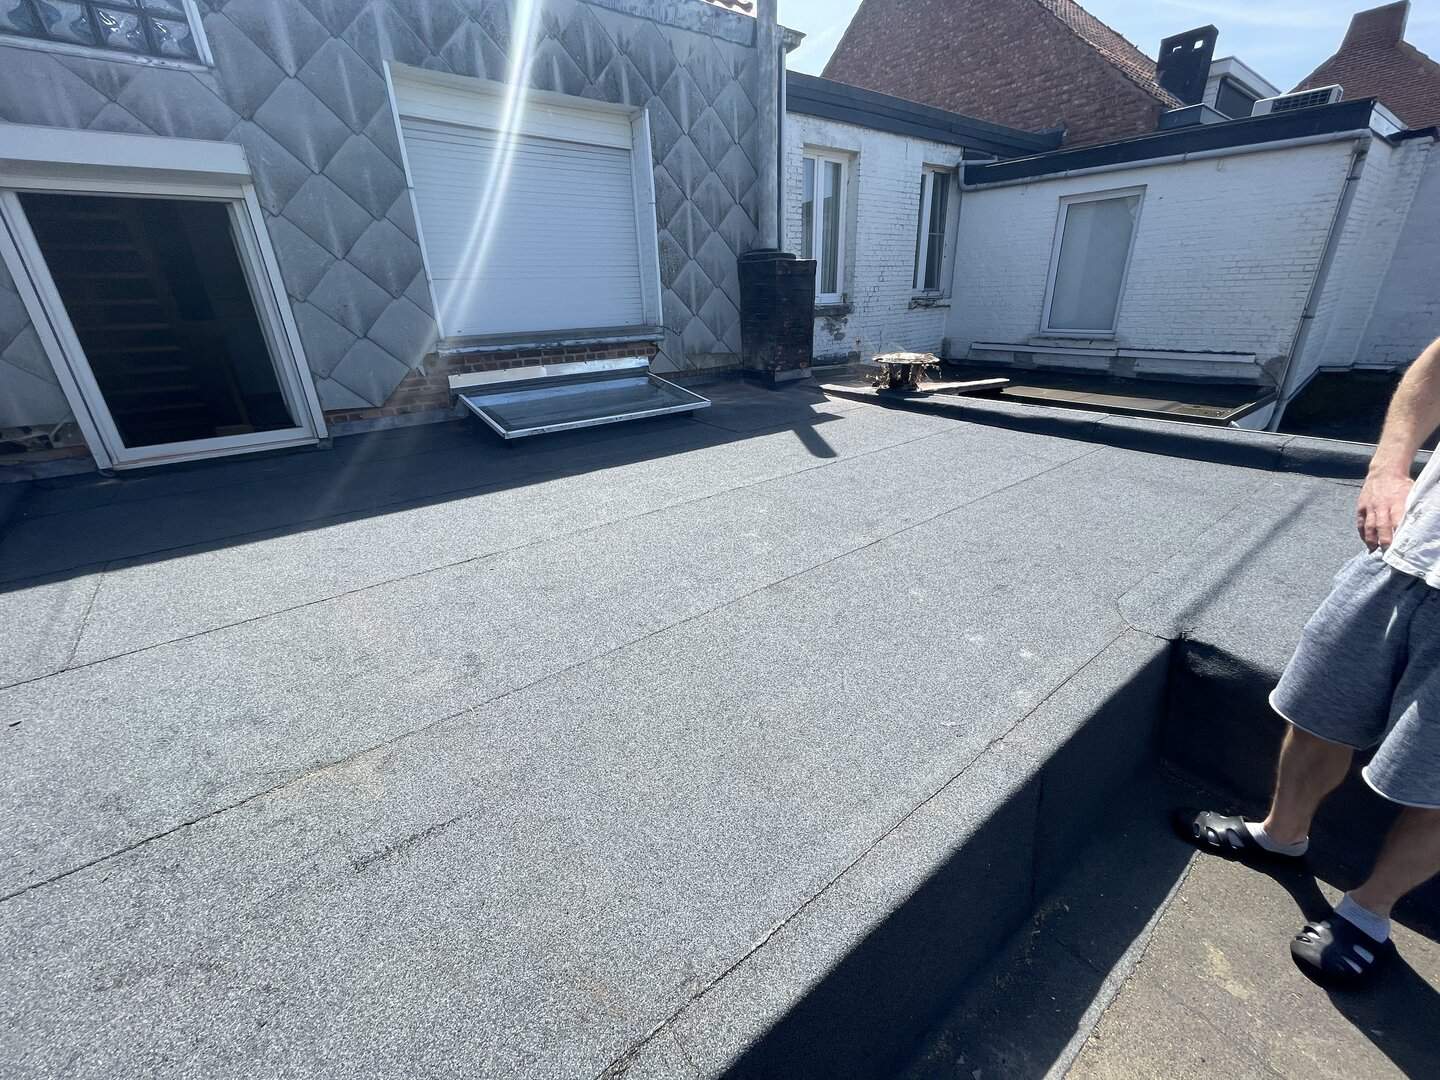 Nieuw plat dak in Zwijndrecht